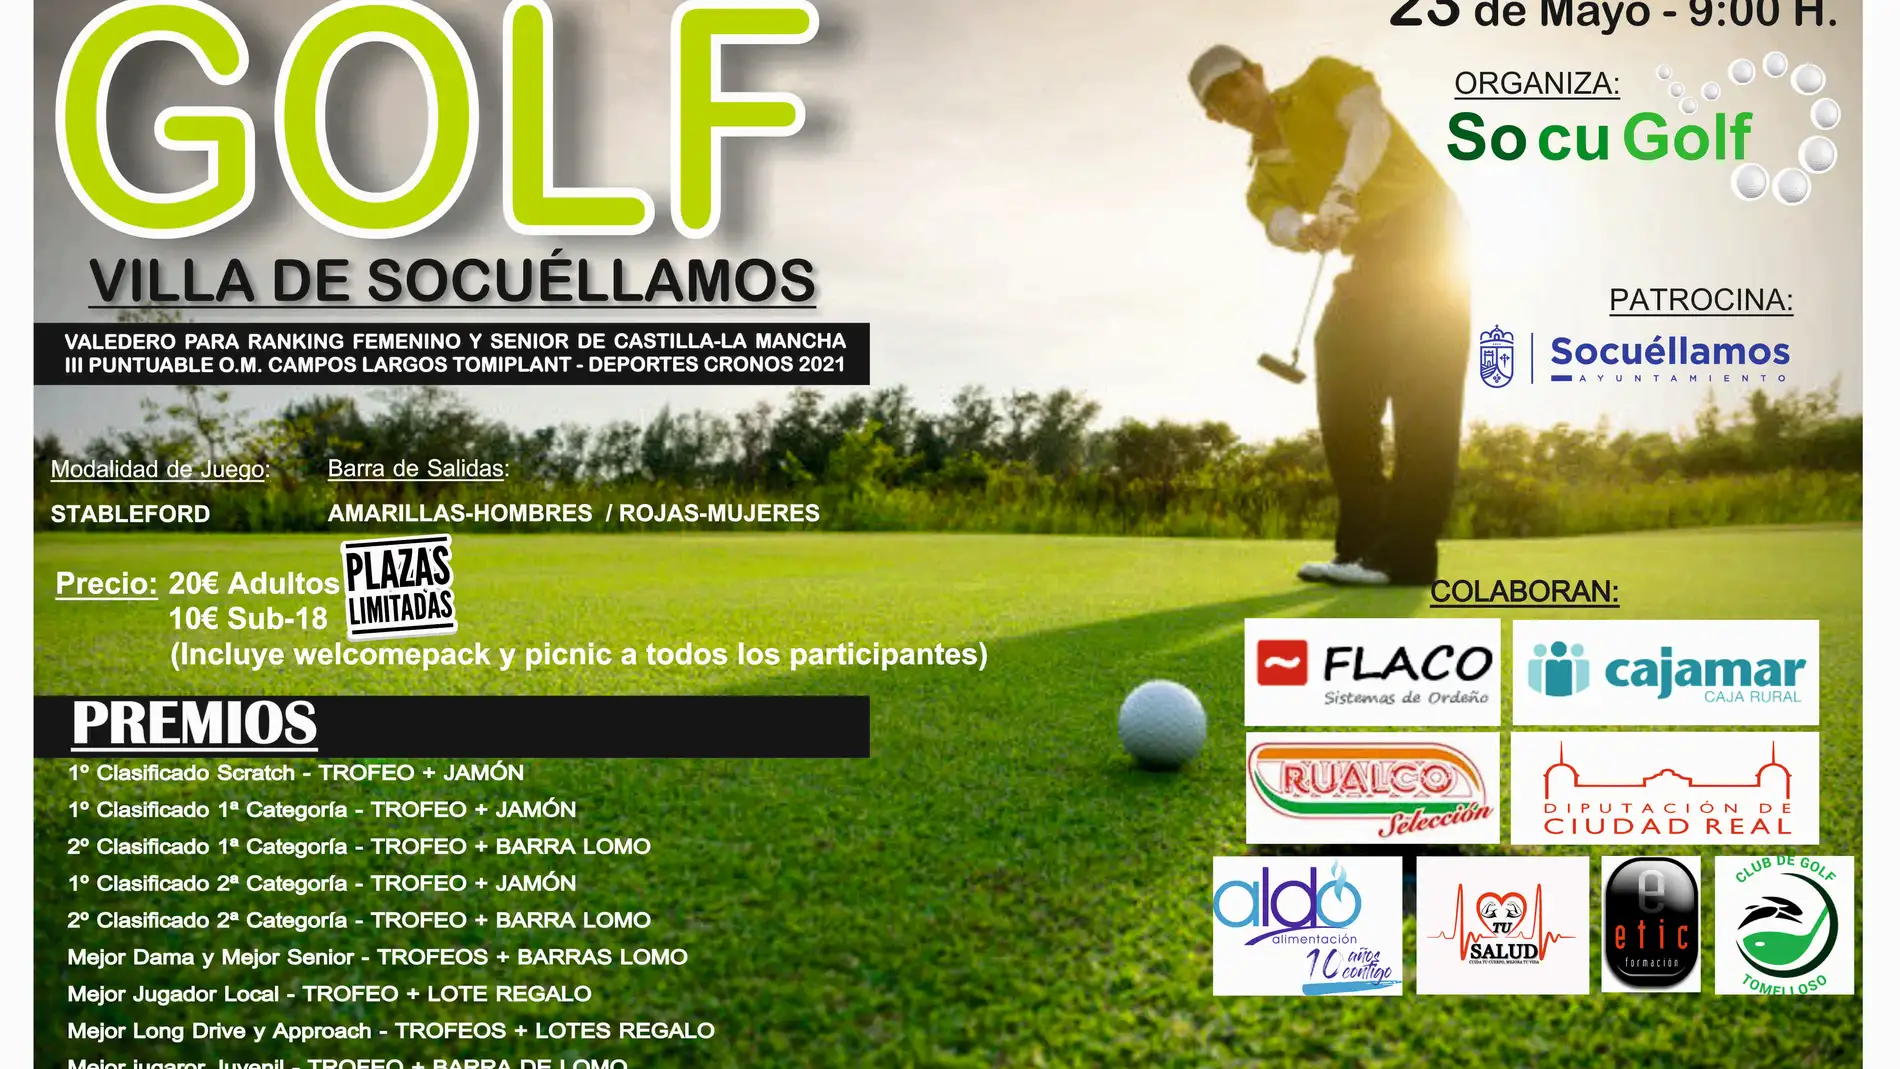 El Ayuntamiento y ‘Socugolf’ presentan el “V Open de Golf Villa de Socuéllamos”